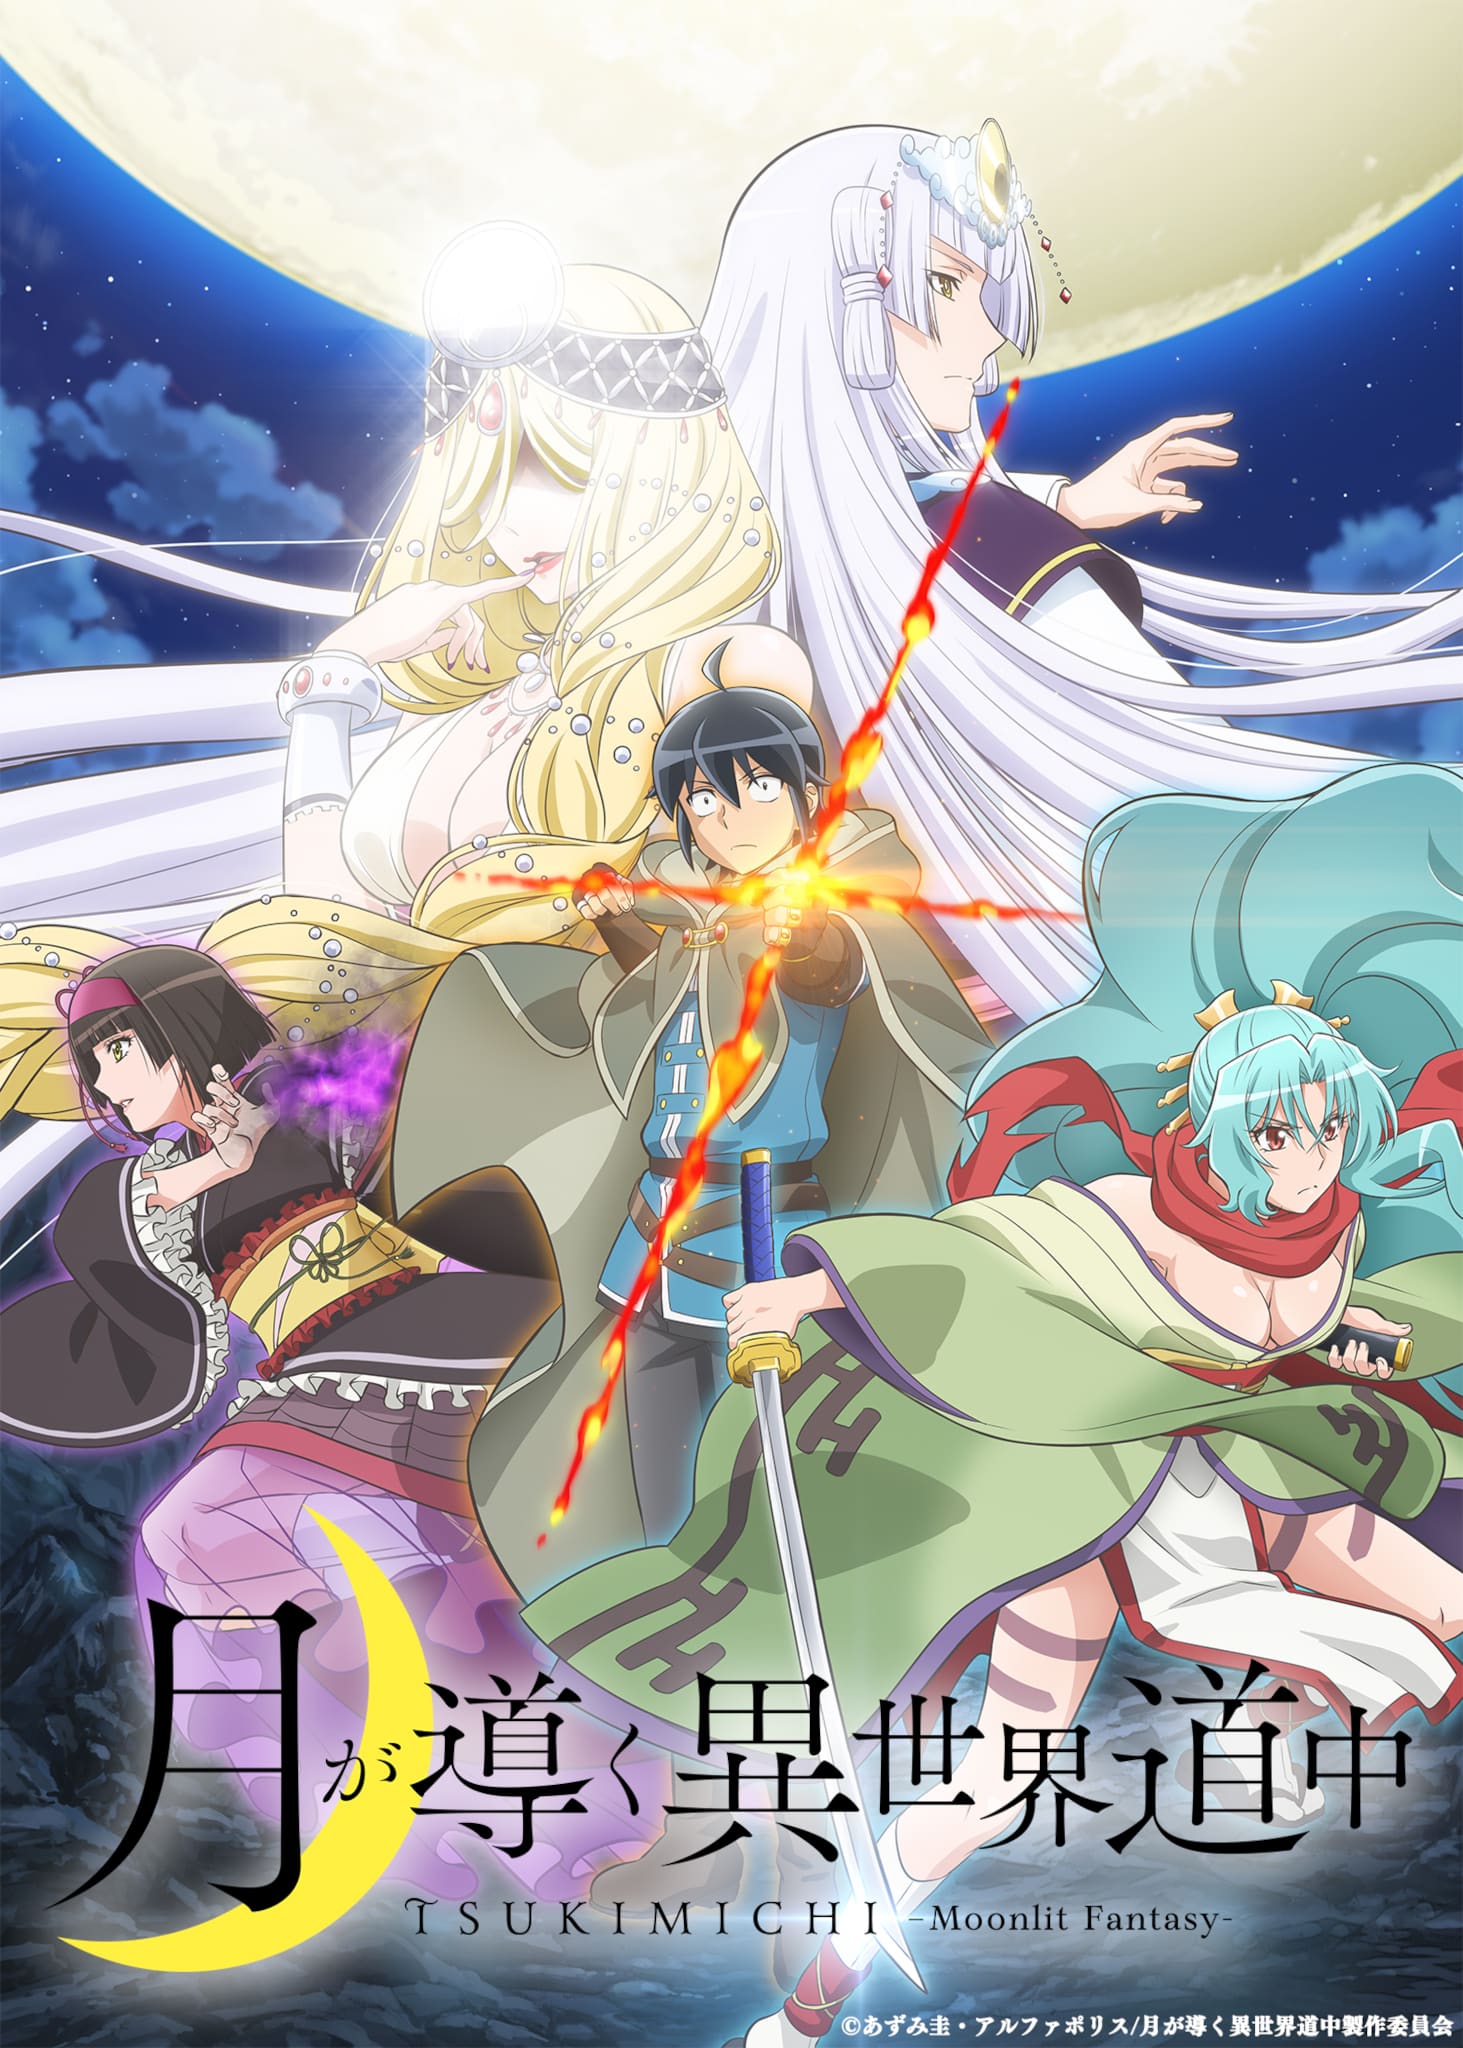 Annonce de la date de sortie de anime Tsukimichi Moonlit Fantasy